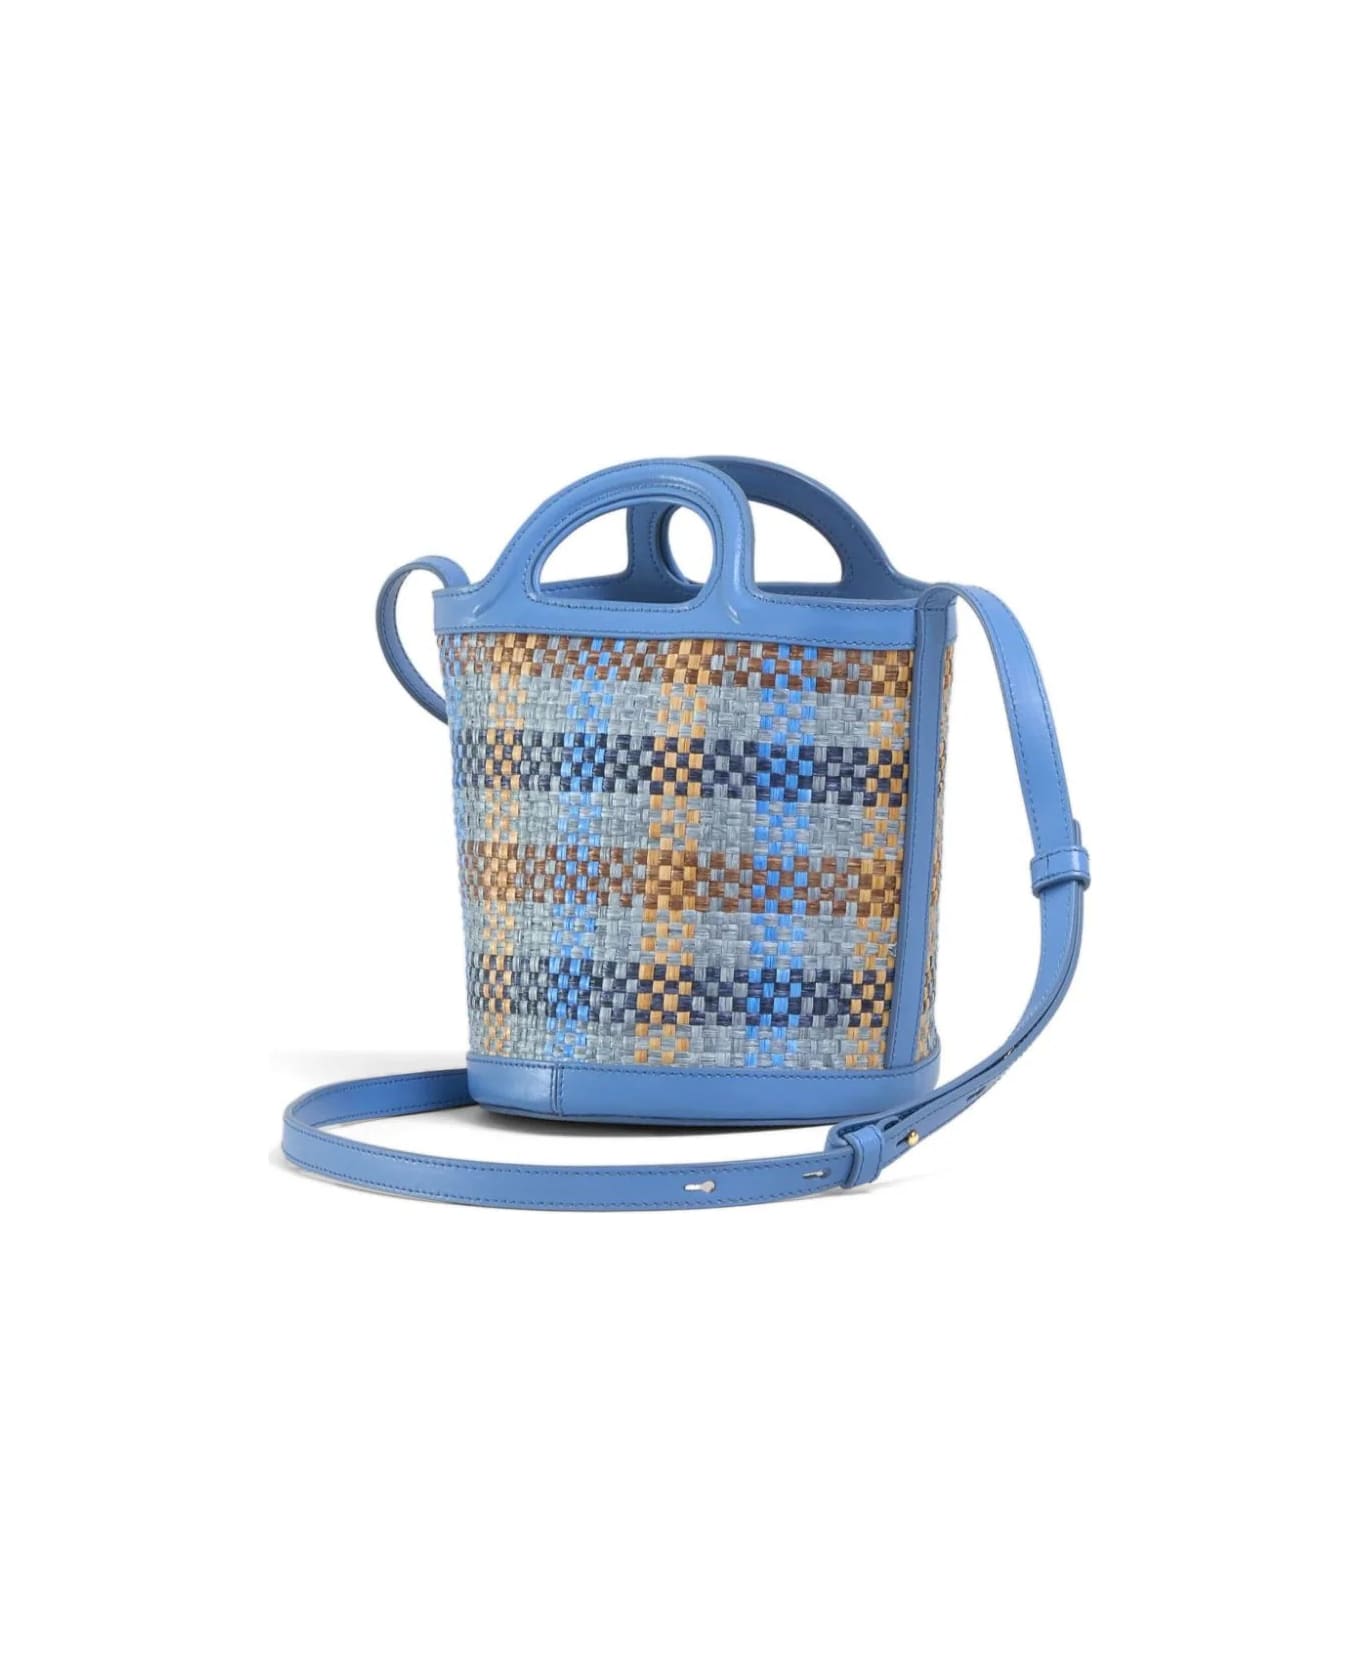 Marni Blue Leather And Raffia Effect Fabric Tropicalia Mini Bag - Blue トートバッグ